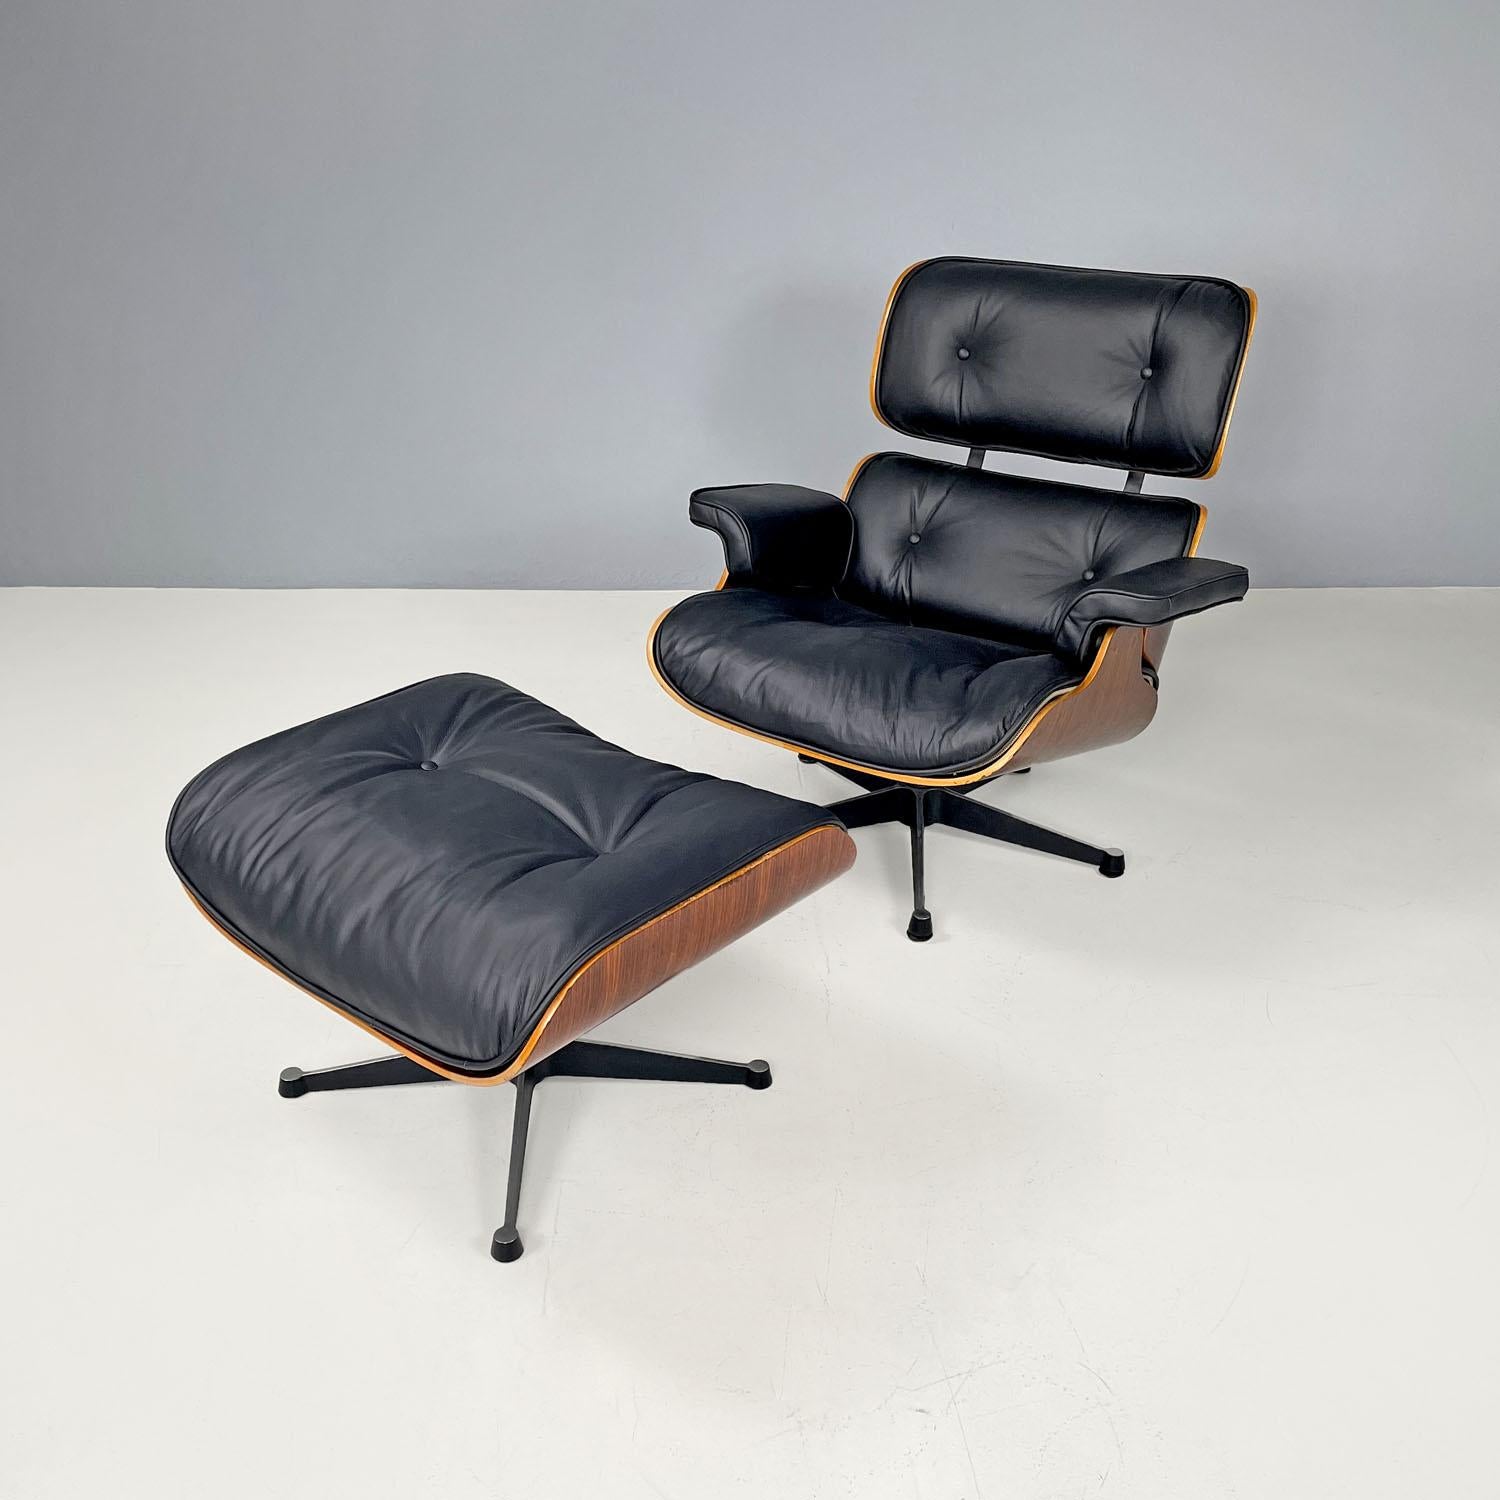 Fauteuil moderne américain en cuir noir 670 671 par Eames pour Miller, années 1970
Ensemble fauteuil et ottoman mod. 670 et 671 avec corps en bois. Le fauteuil est composé d'une assise et d'un dossier carrés aux angles arrondis, entièrement